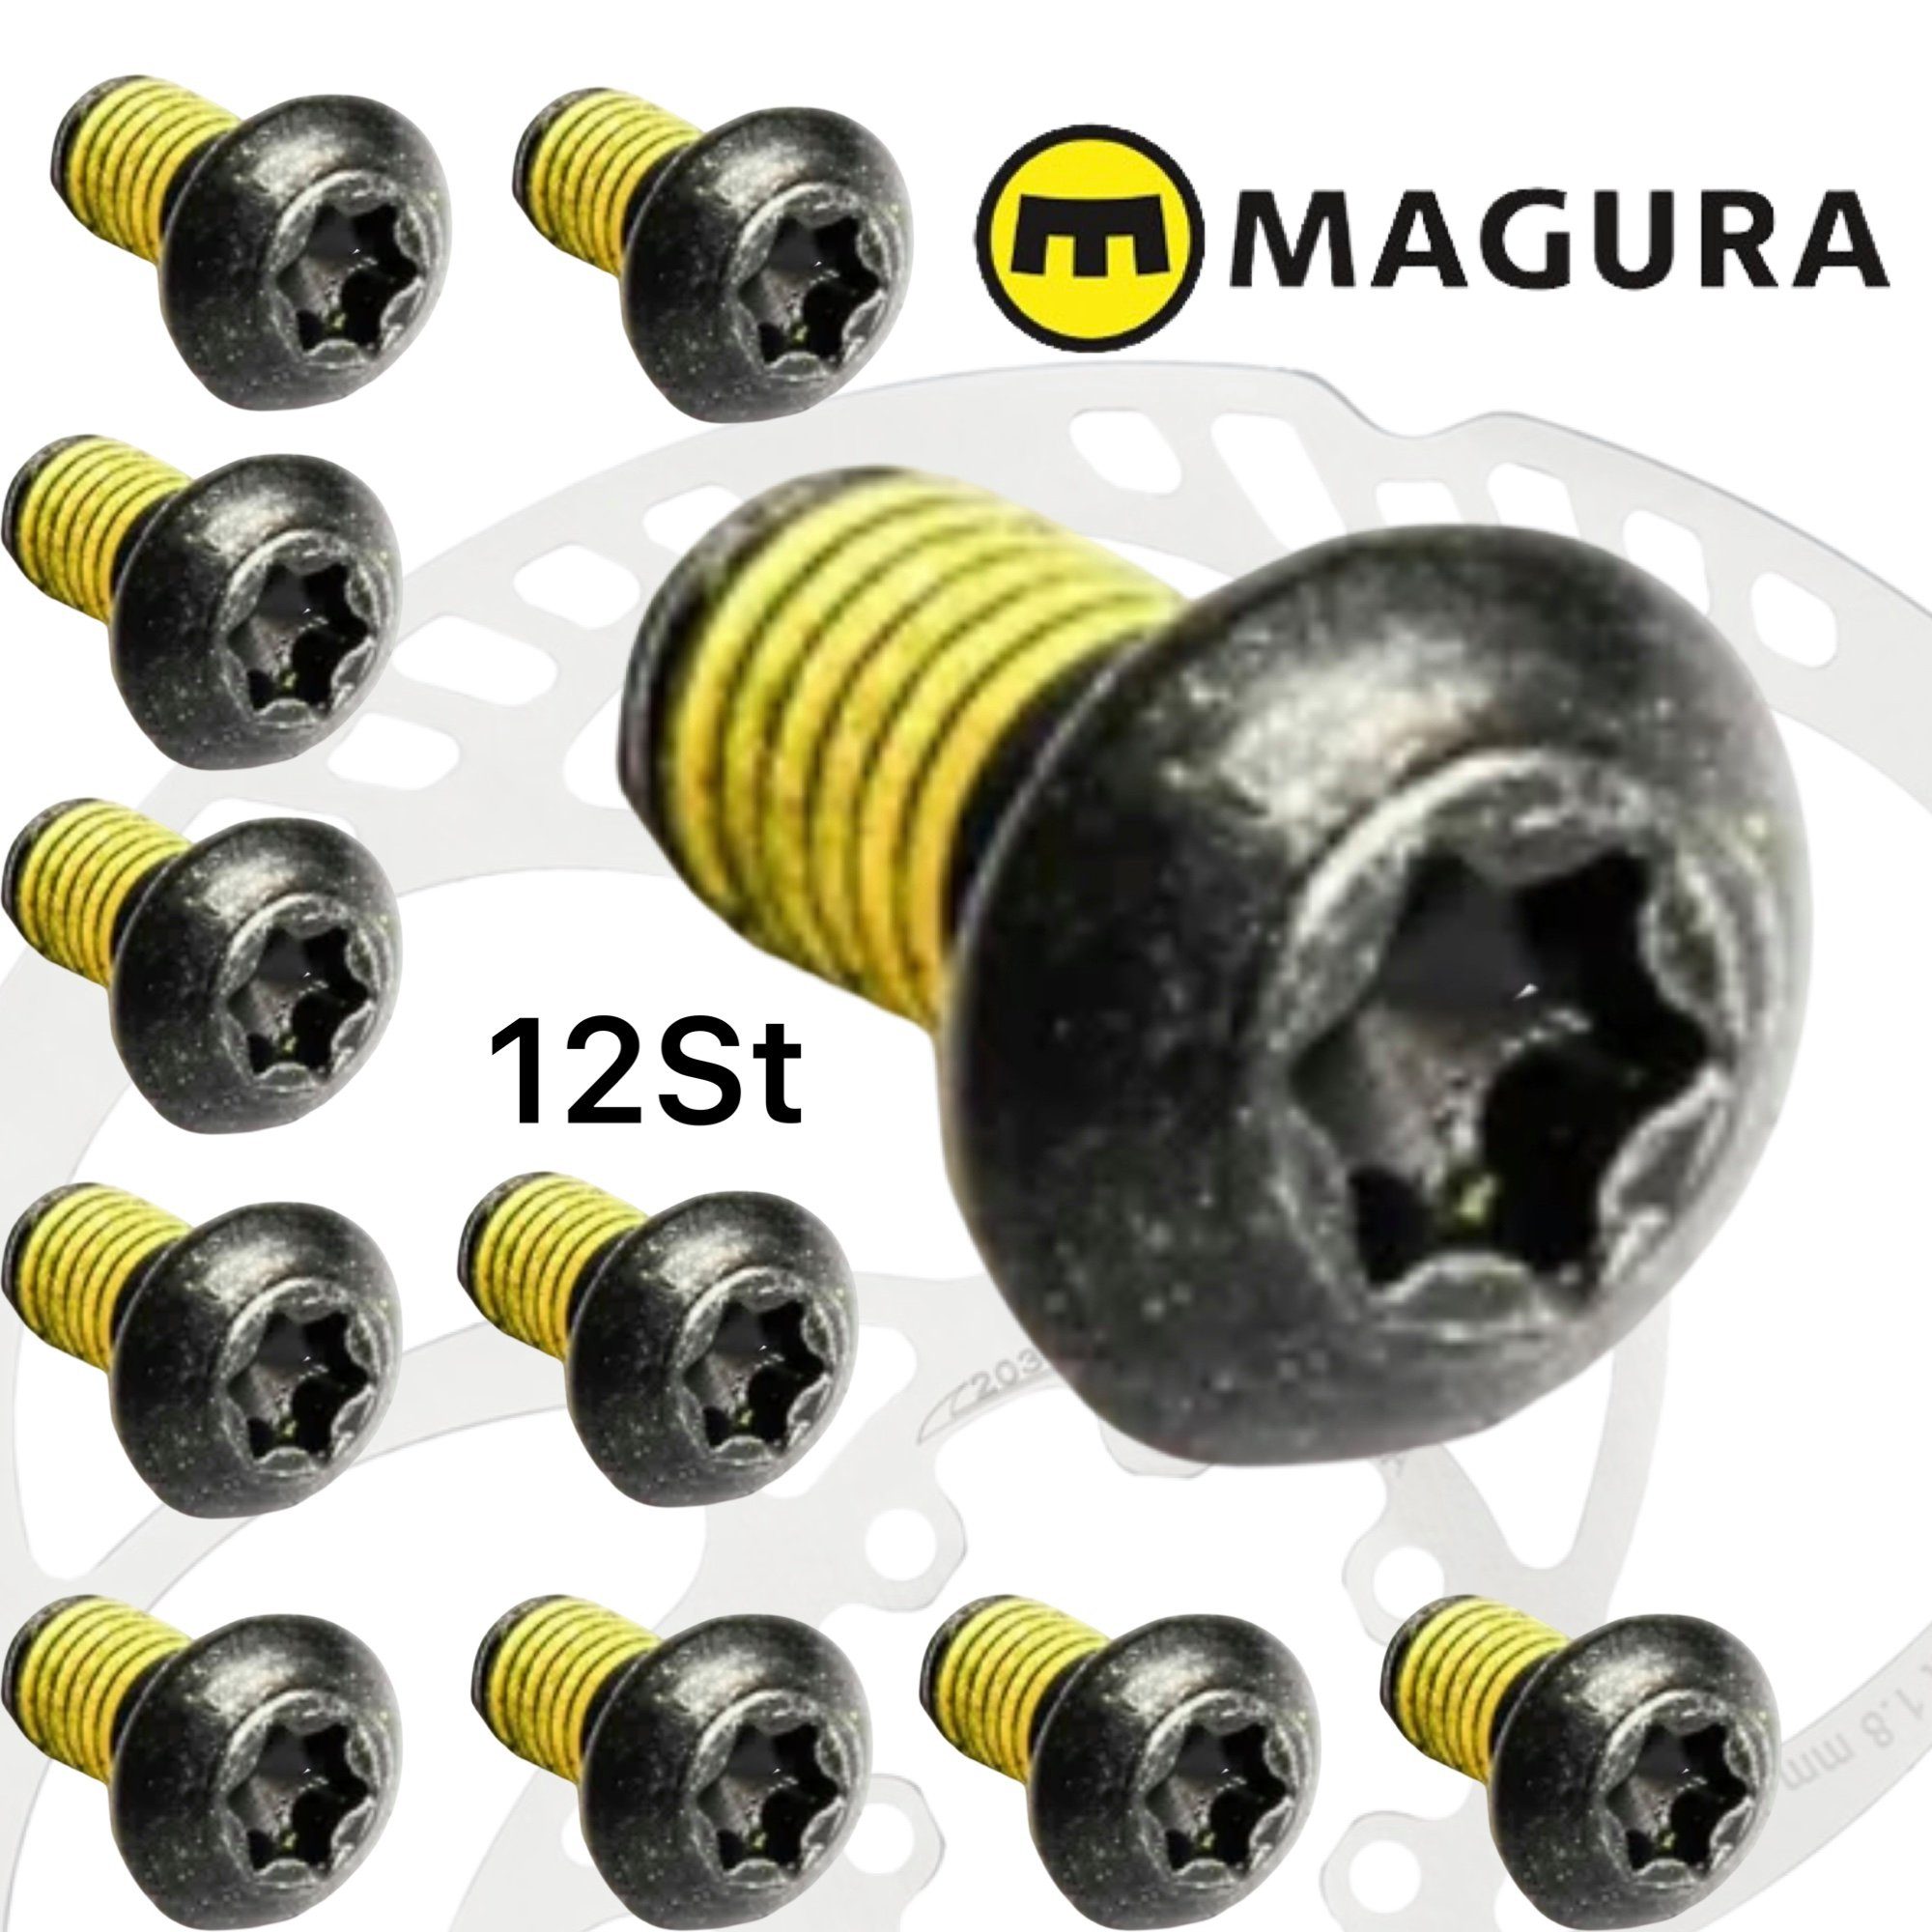 Magura Scheibenbremse Magura Bremsscheiben Befestigungs Schrauben T25 M5x10 (12 Stück)